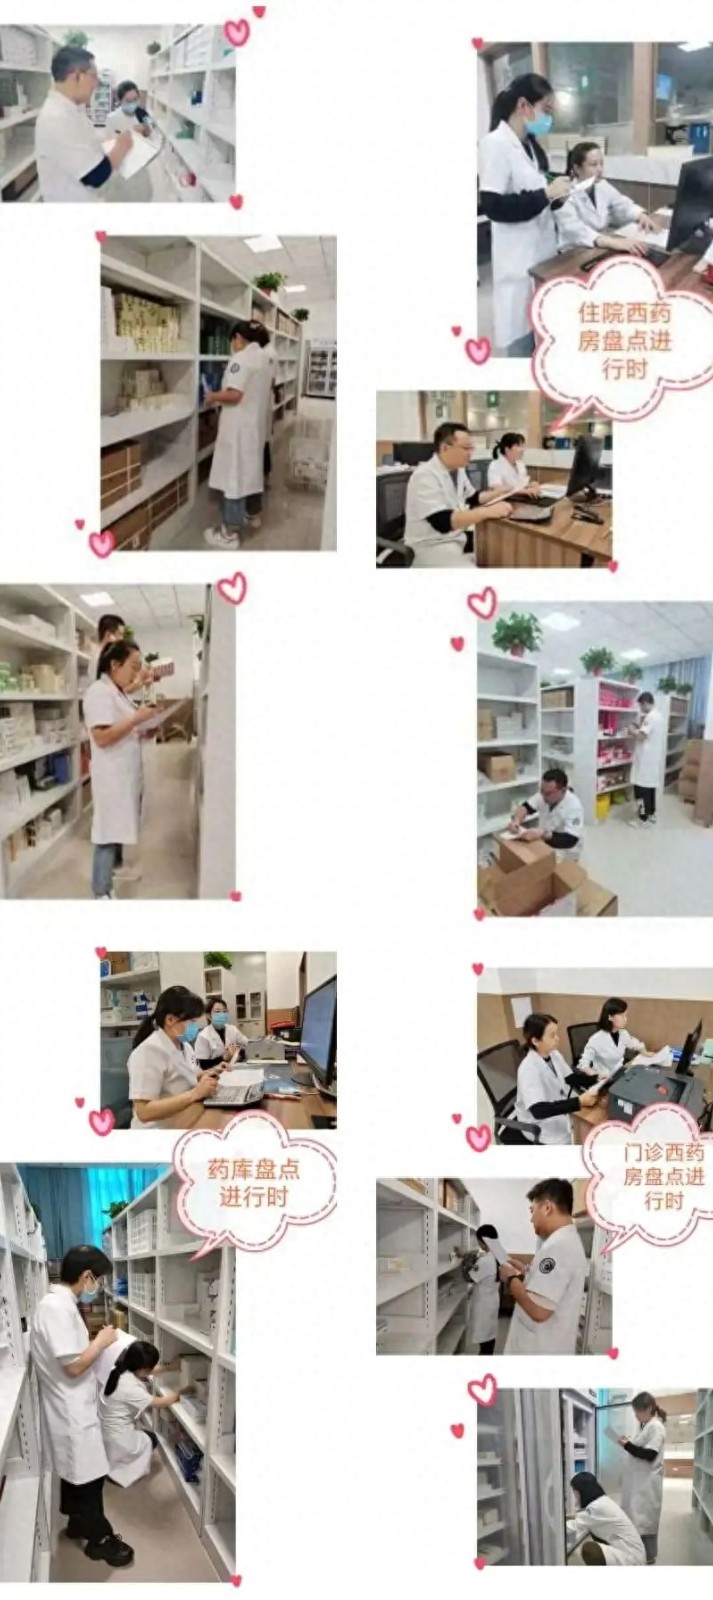 渭南市临渭区中医医院药剂科第三季度盘点工作2.jpg